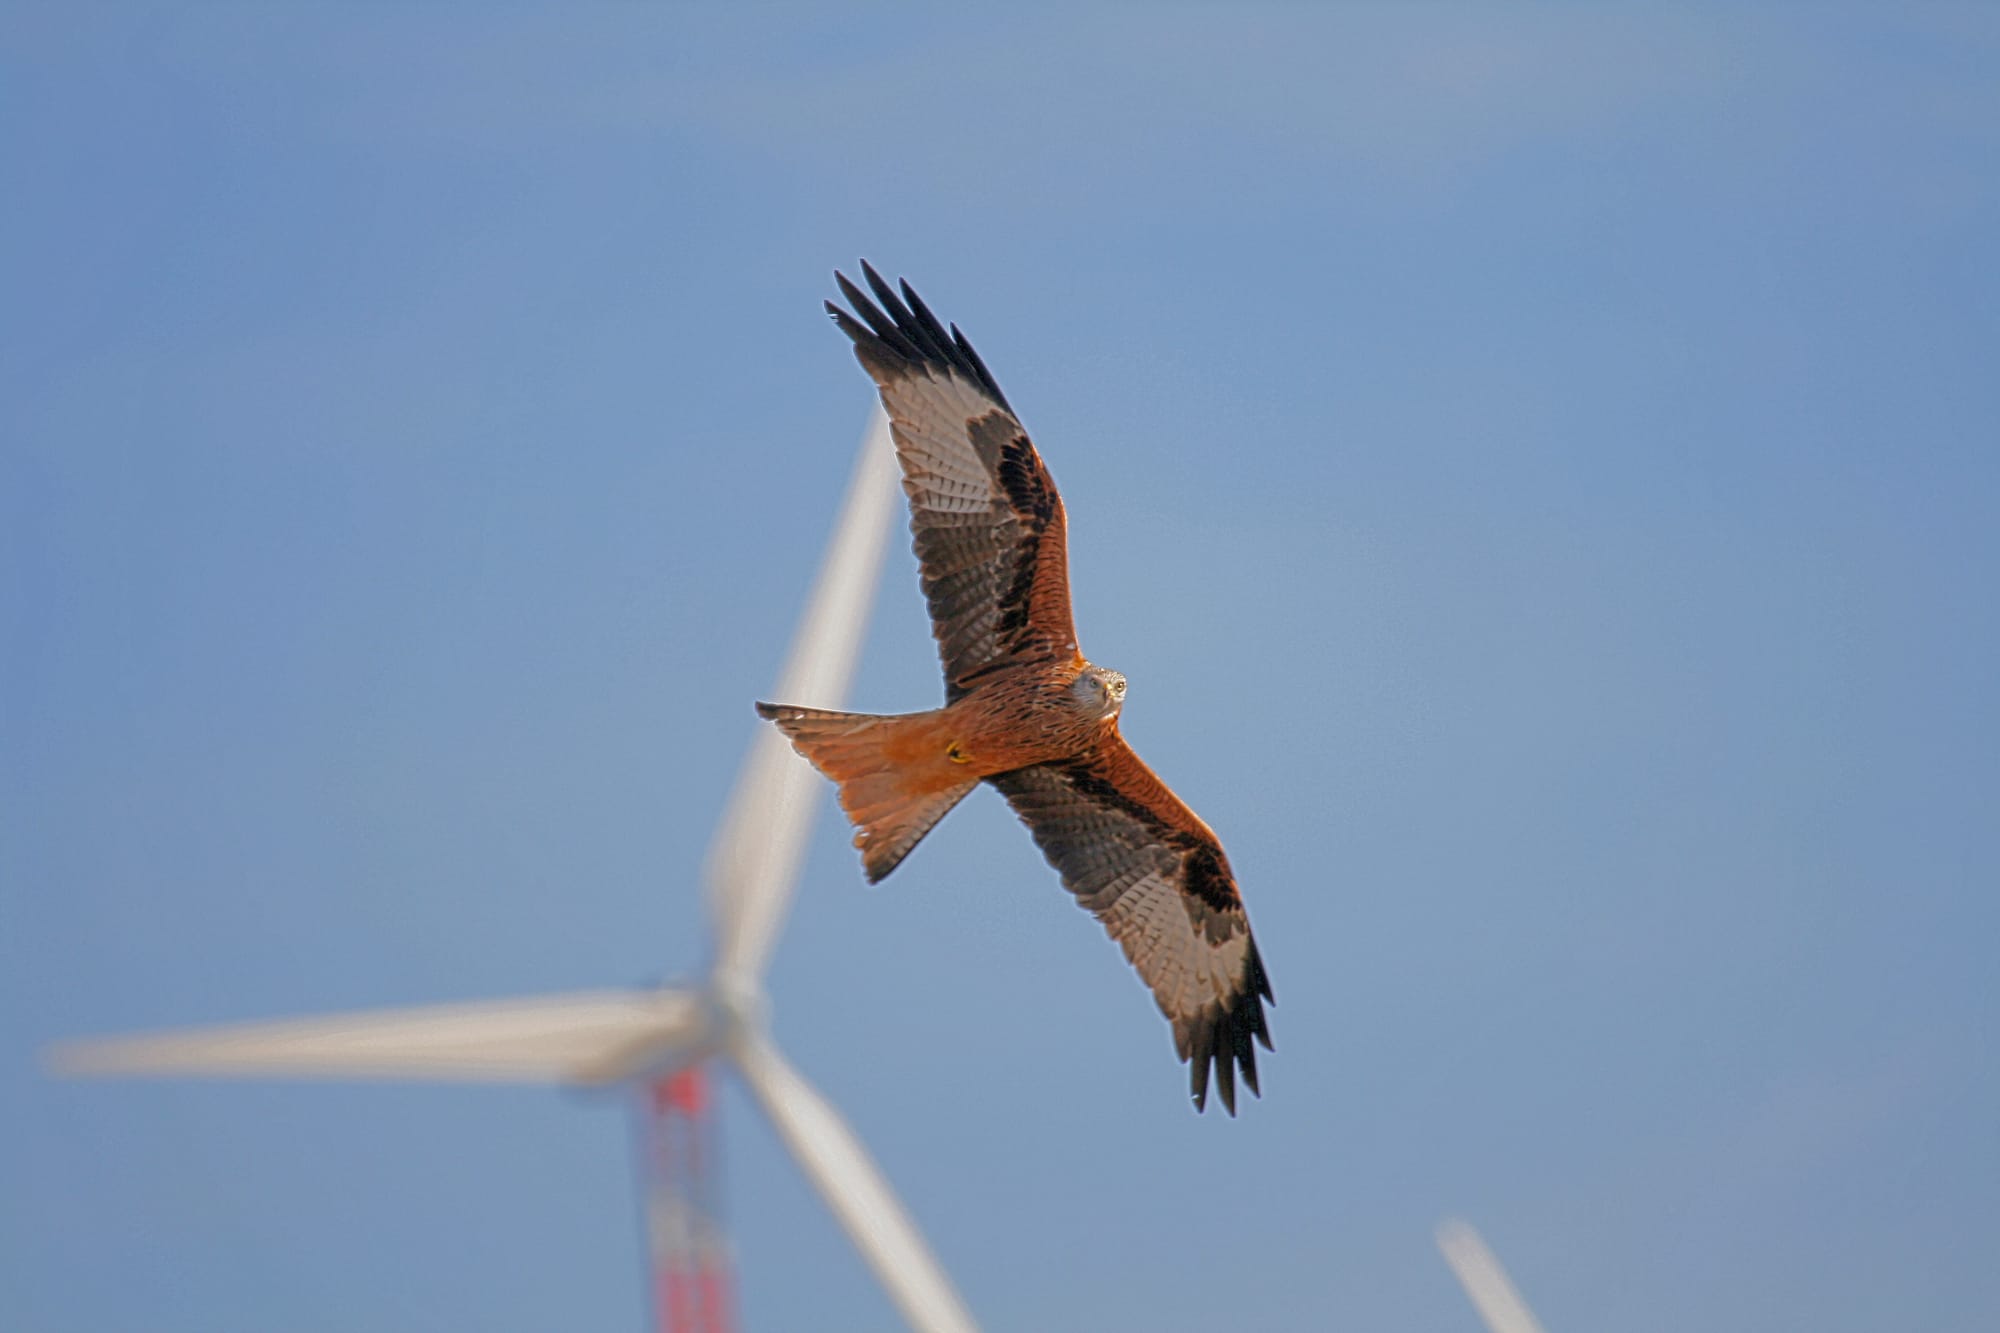 Il peso del vento: così l'eolico può minacciare gli ecosistemi naturali